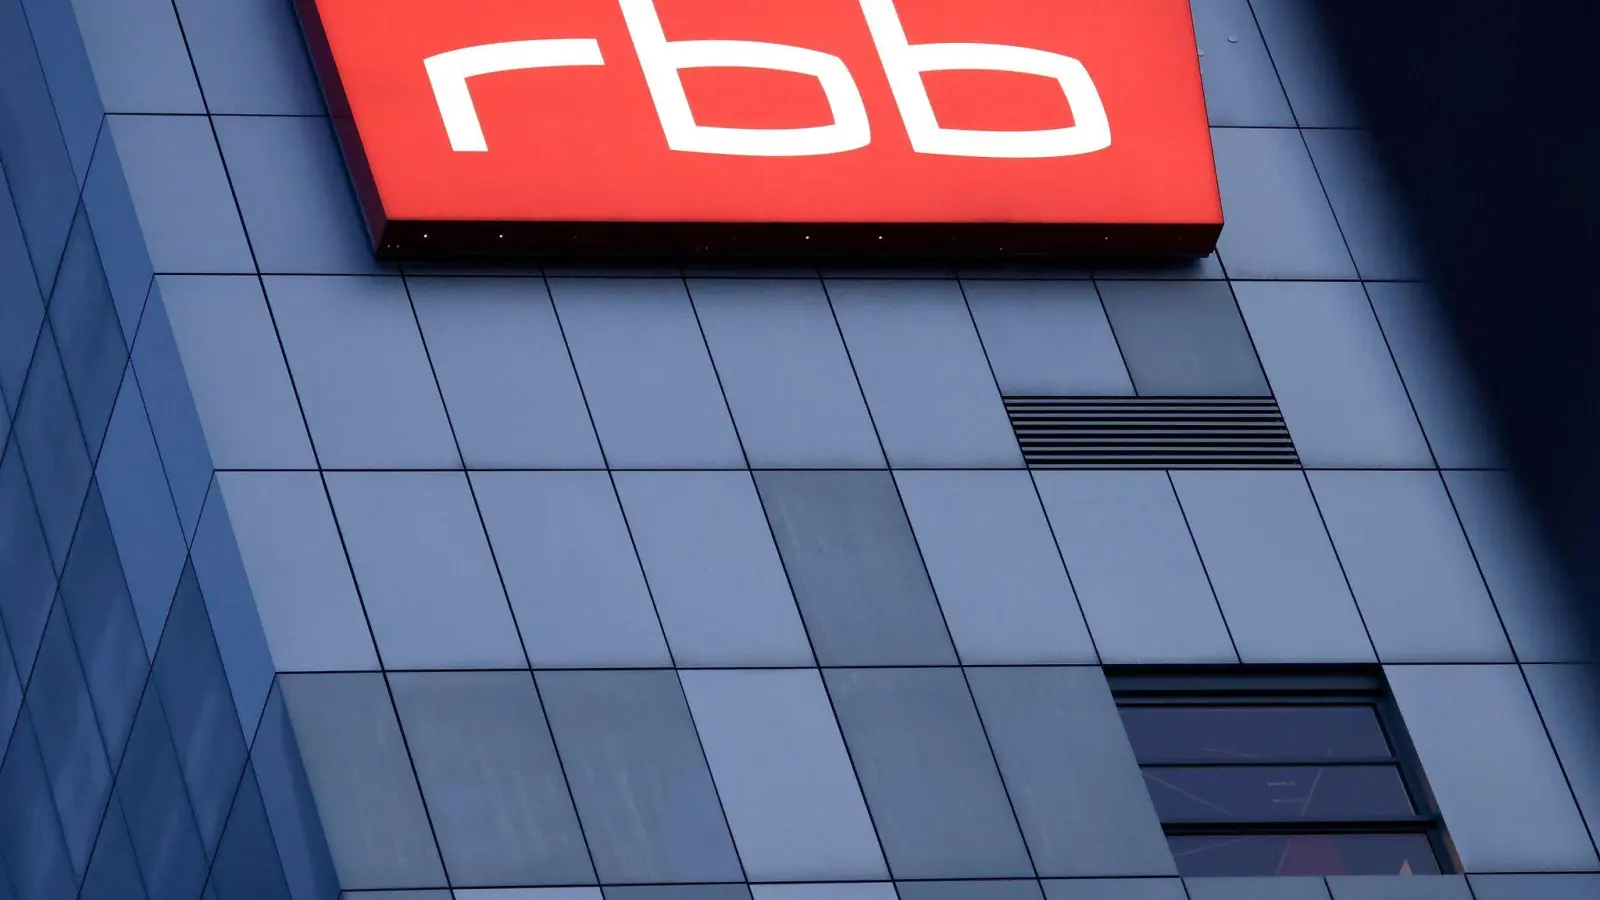 Der RBB fordert laut Gericht Geld von Ex-Intendantin Patricia Schlesinger zurück. (Foto: Carsten Koall/dpa)